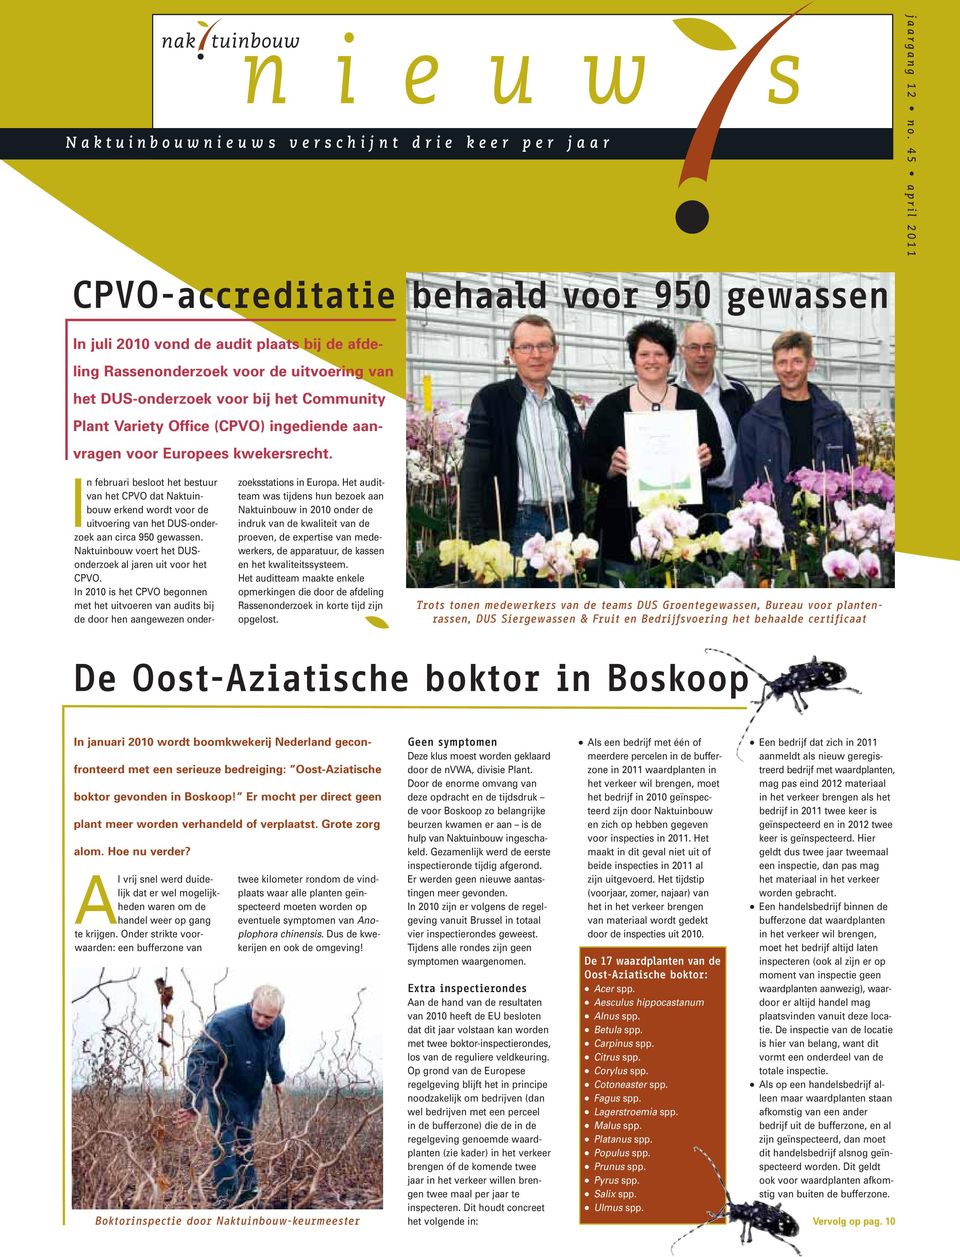 Europees kwekersrecht. In februari besloot het bestuur van het CPVO dat Naktuinbouw erkend wordt voor de uitvoering van het DUS-onderzoek aan circa 950 gewassen.